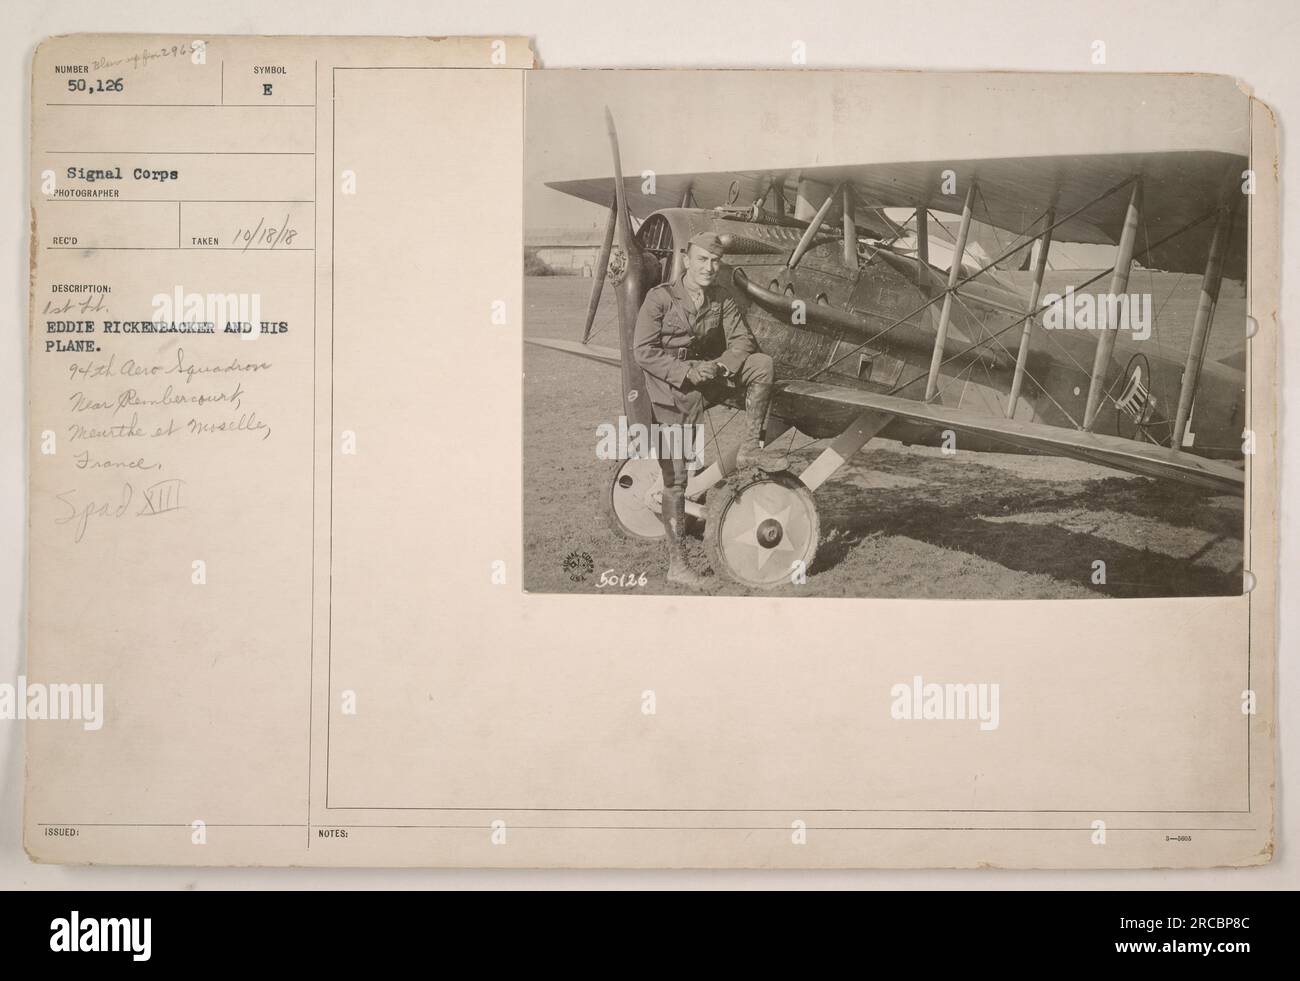 Eddie Rickenbacker, un destacado piloto de la Primera Guerra Mundial, fotografiado con su avión, A Spad XIII, cerca de Rembercourt, Meurthe et Moselle, Francia. La fotografía fue tomada por el fotógrafo de Signal Corps BECO y está etiquetada como #29655 188UED. Rickenbacker fue miembro del 94º Escuadrón Aero. El SPAD XIII fue un avión popular utilizado en la guerra. Foto de stock